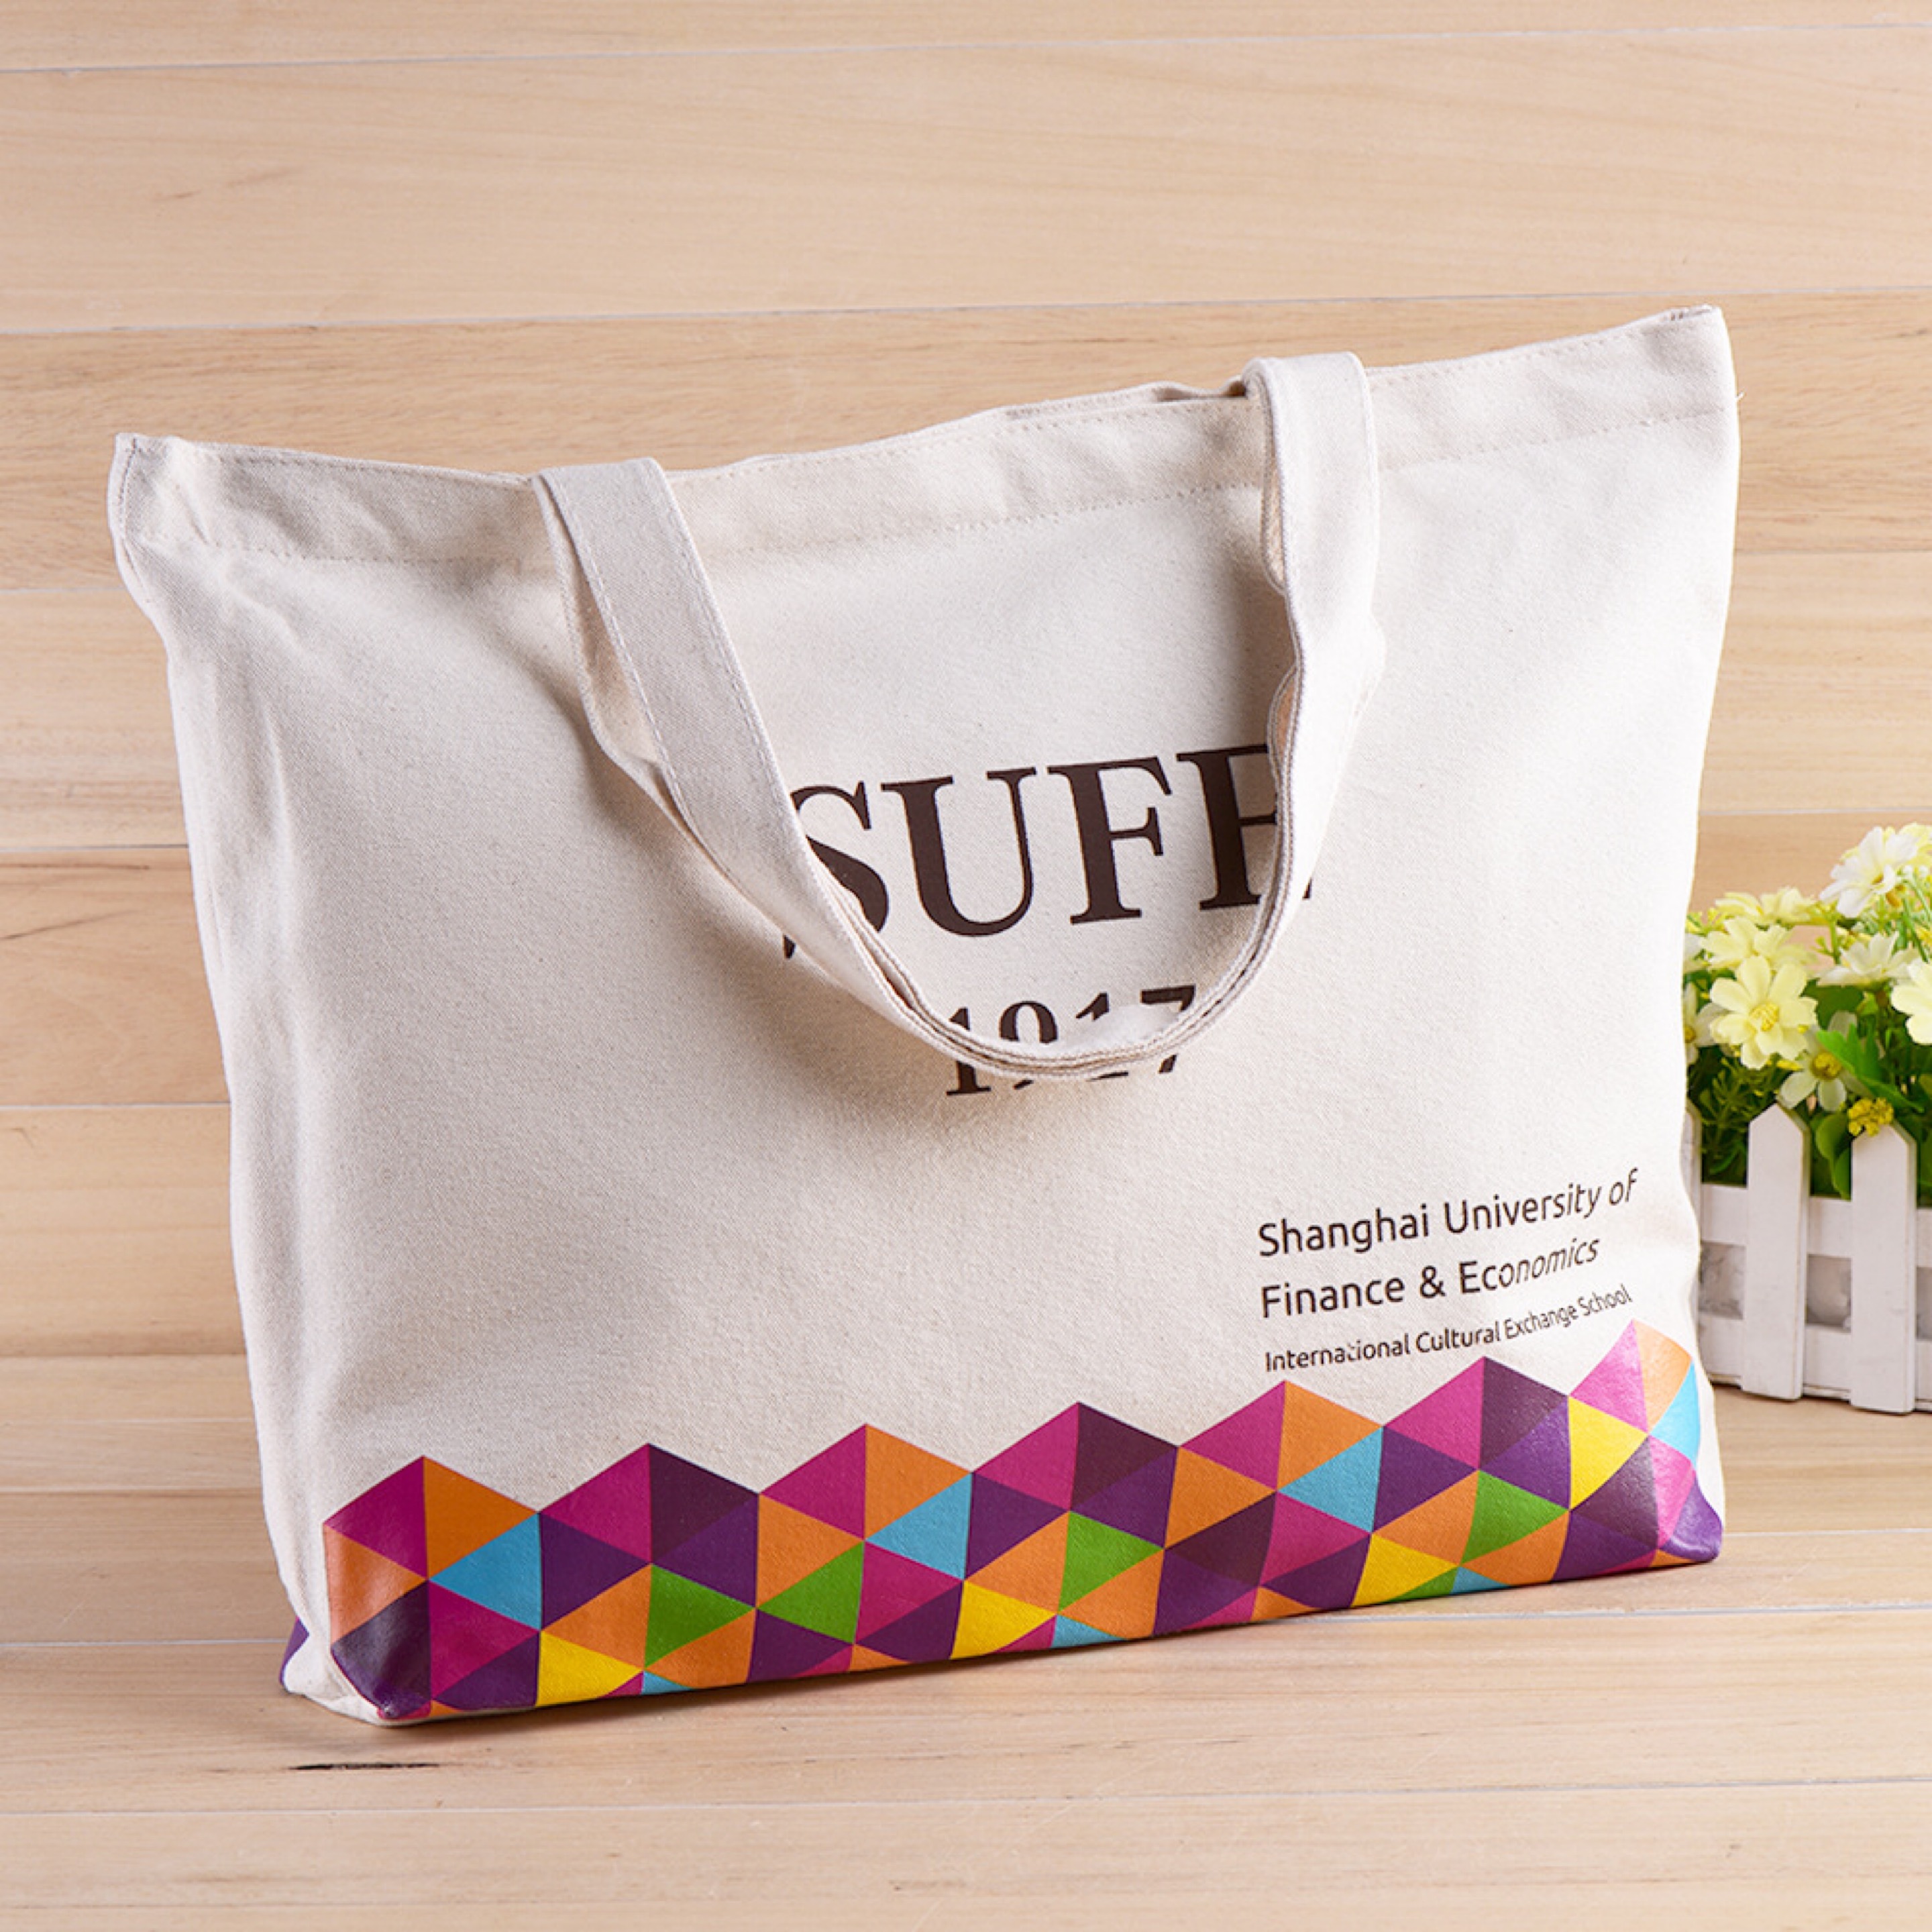 БНХАУ-ын үйлдвэр бүхэлдээ хөвөн даавуун солонгос загварын байгаль орчны задгай бүтээлч дизайн лого худалдааны цүнх